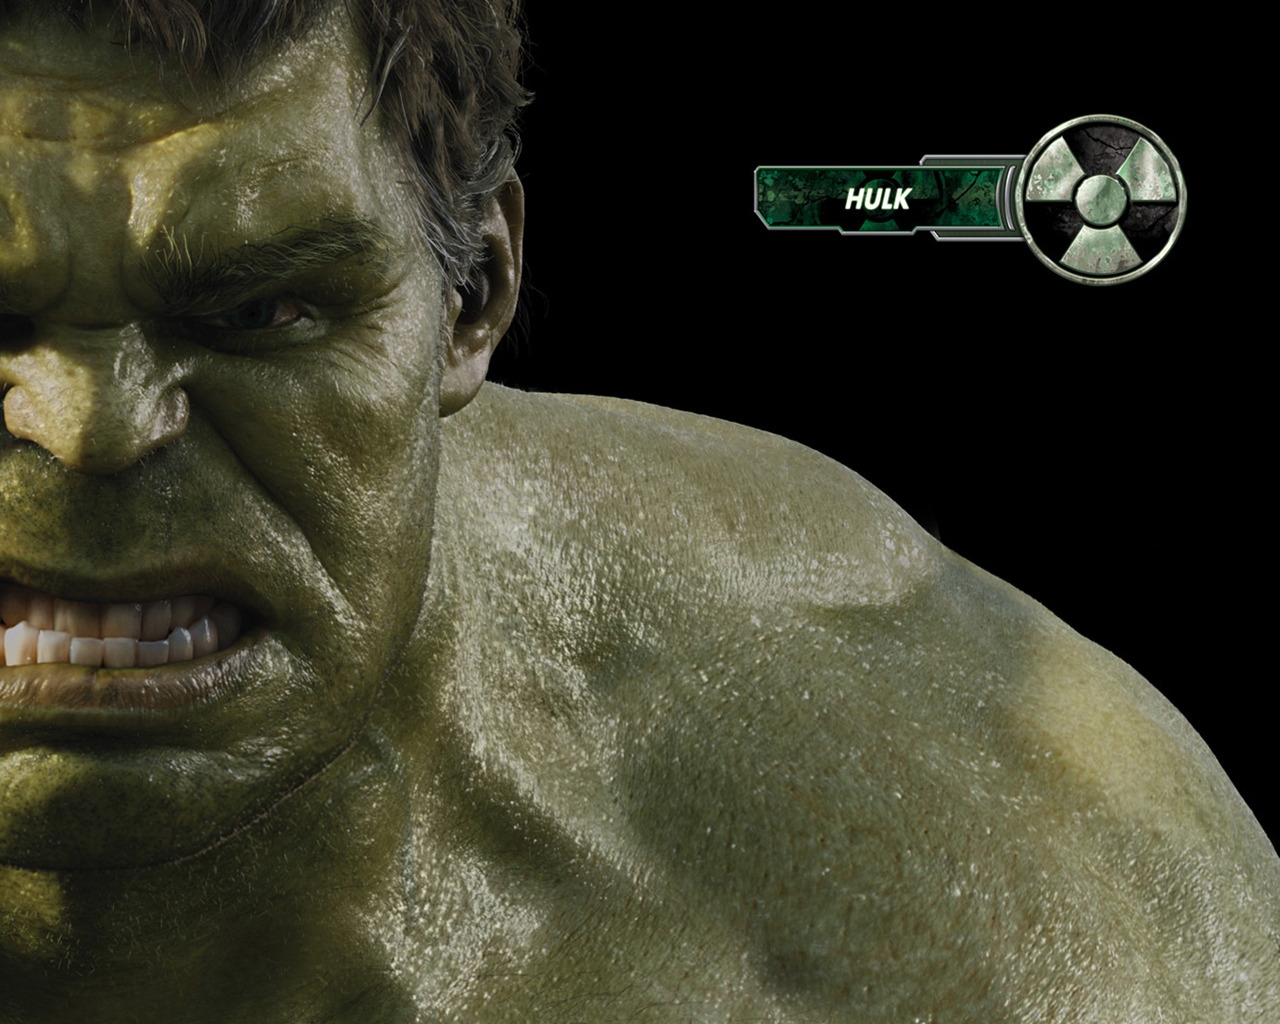 The Avengers Hulk for 1280 x 1024 resolution